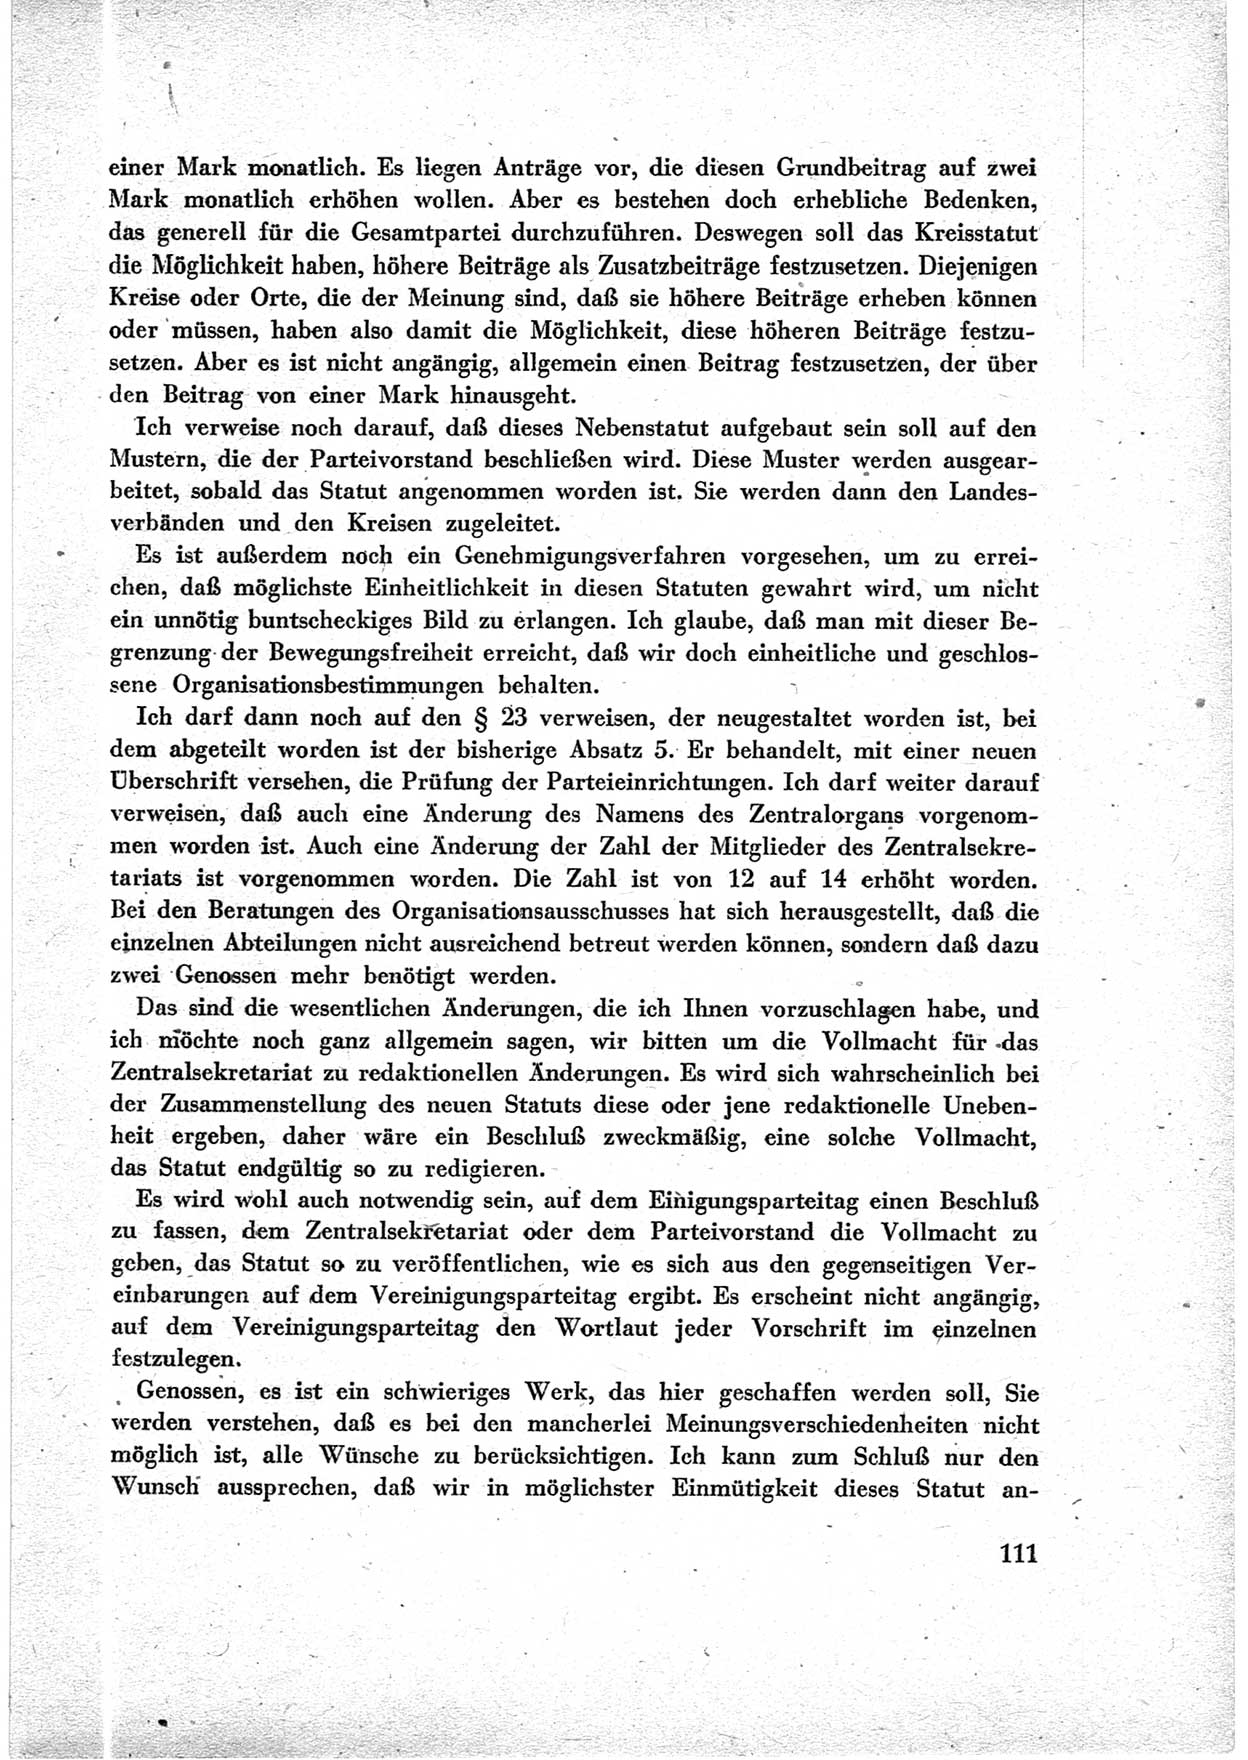 40. Parteitag der Sozialdemokratischen Partei Deutschlands (SPD) [Sowjetische Besatzungszone (SBZ) Deutschlands] am 19. und 20. April 1946 in Berlin, Seite 111 (40. PT SPD SBZ Dtl. 1946, S. 111)